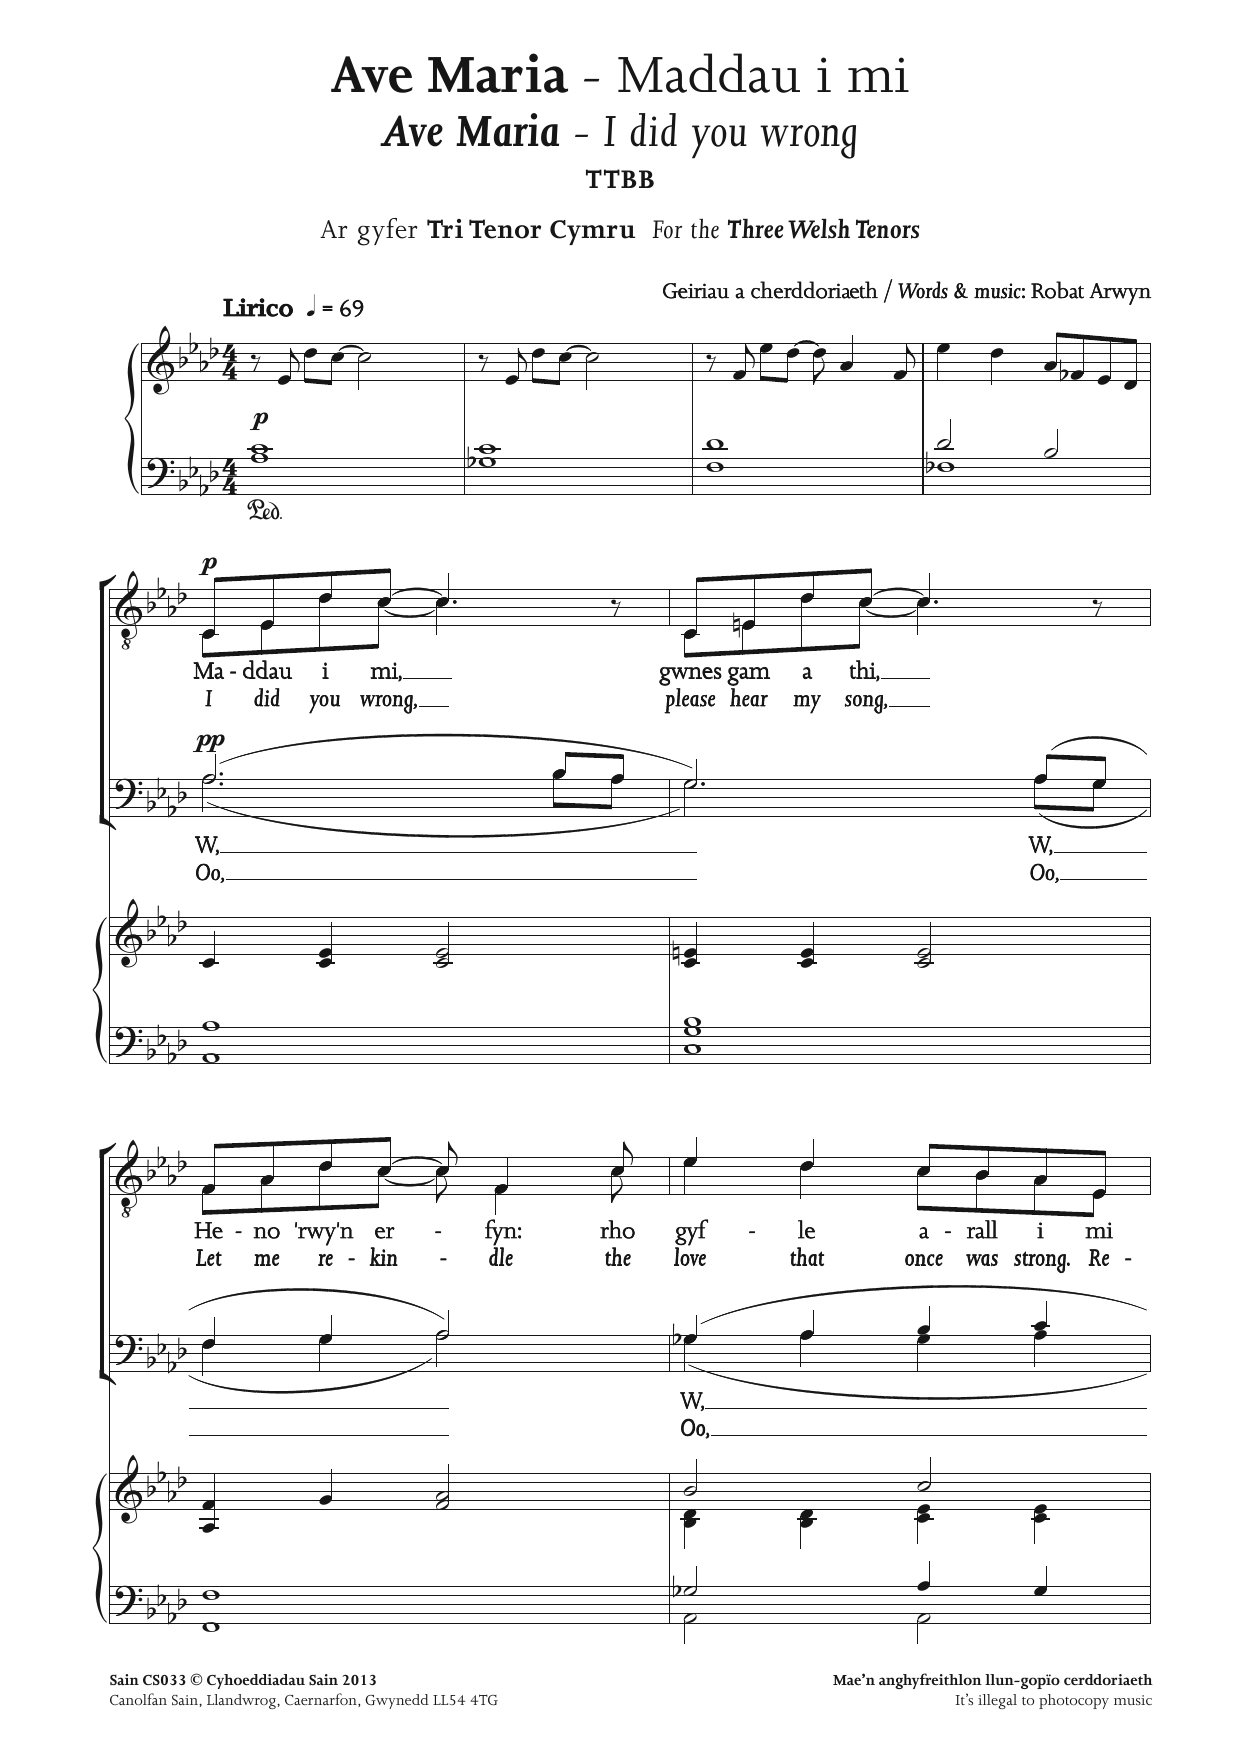 Robat Arwyn Ave Maria - Maddau i mi Sheet Music Notes & Chords for TTBB - Download or Print PDF